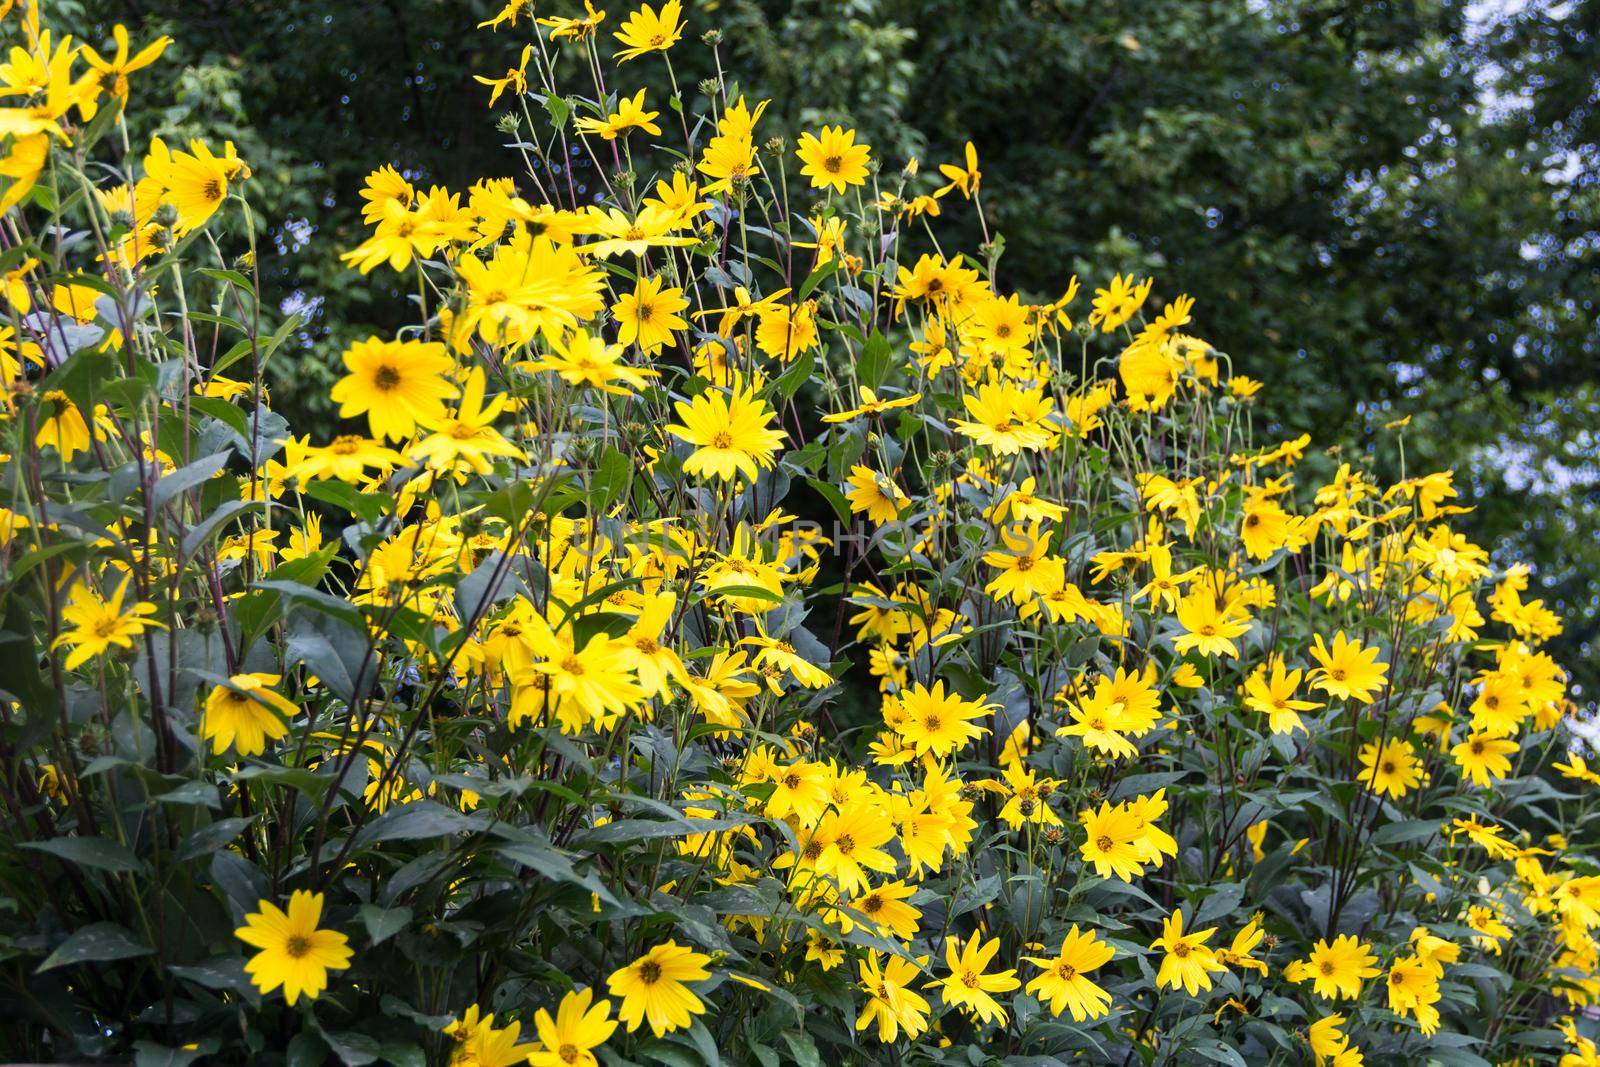 yellow flowers of the garden sunflower, Helianthus tuberosus or Jerusalem artichoke